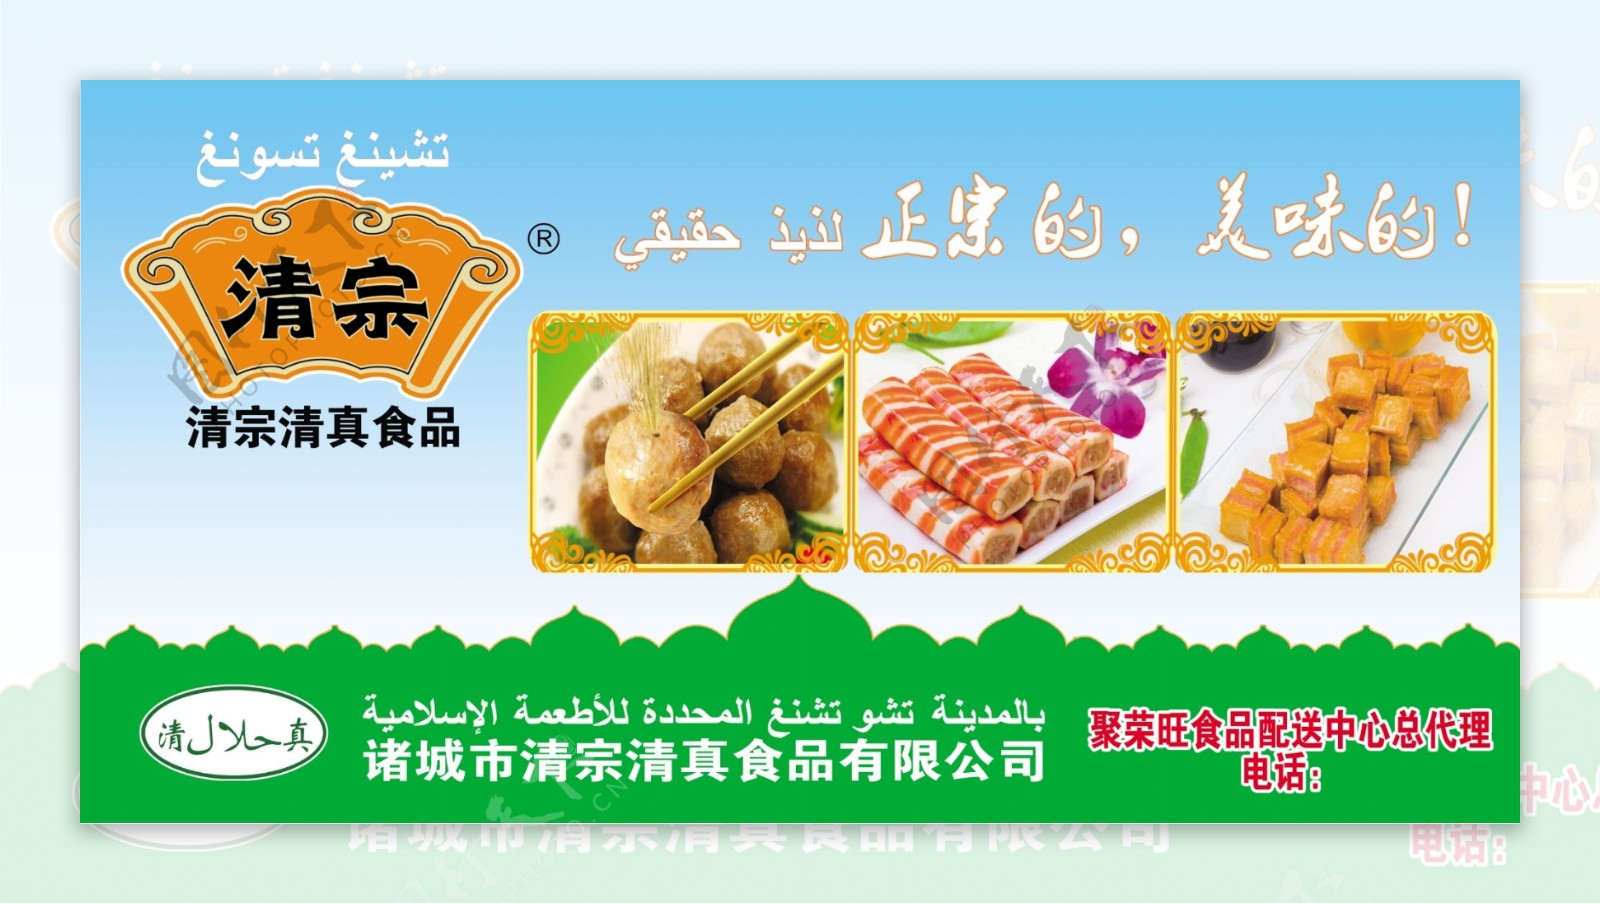 清宗清真食品海报图片